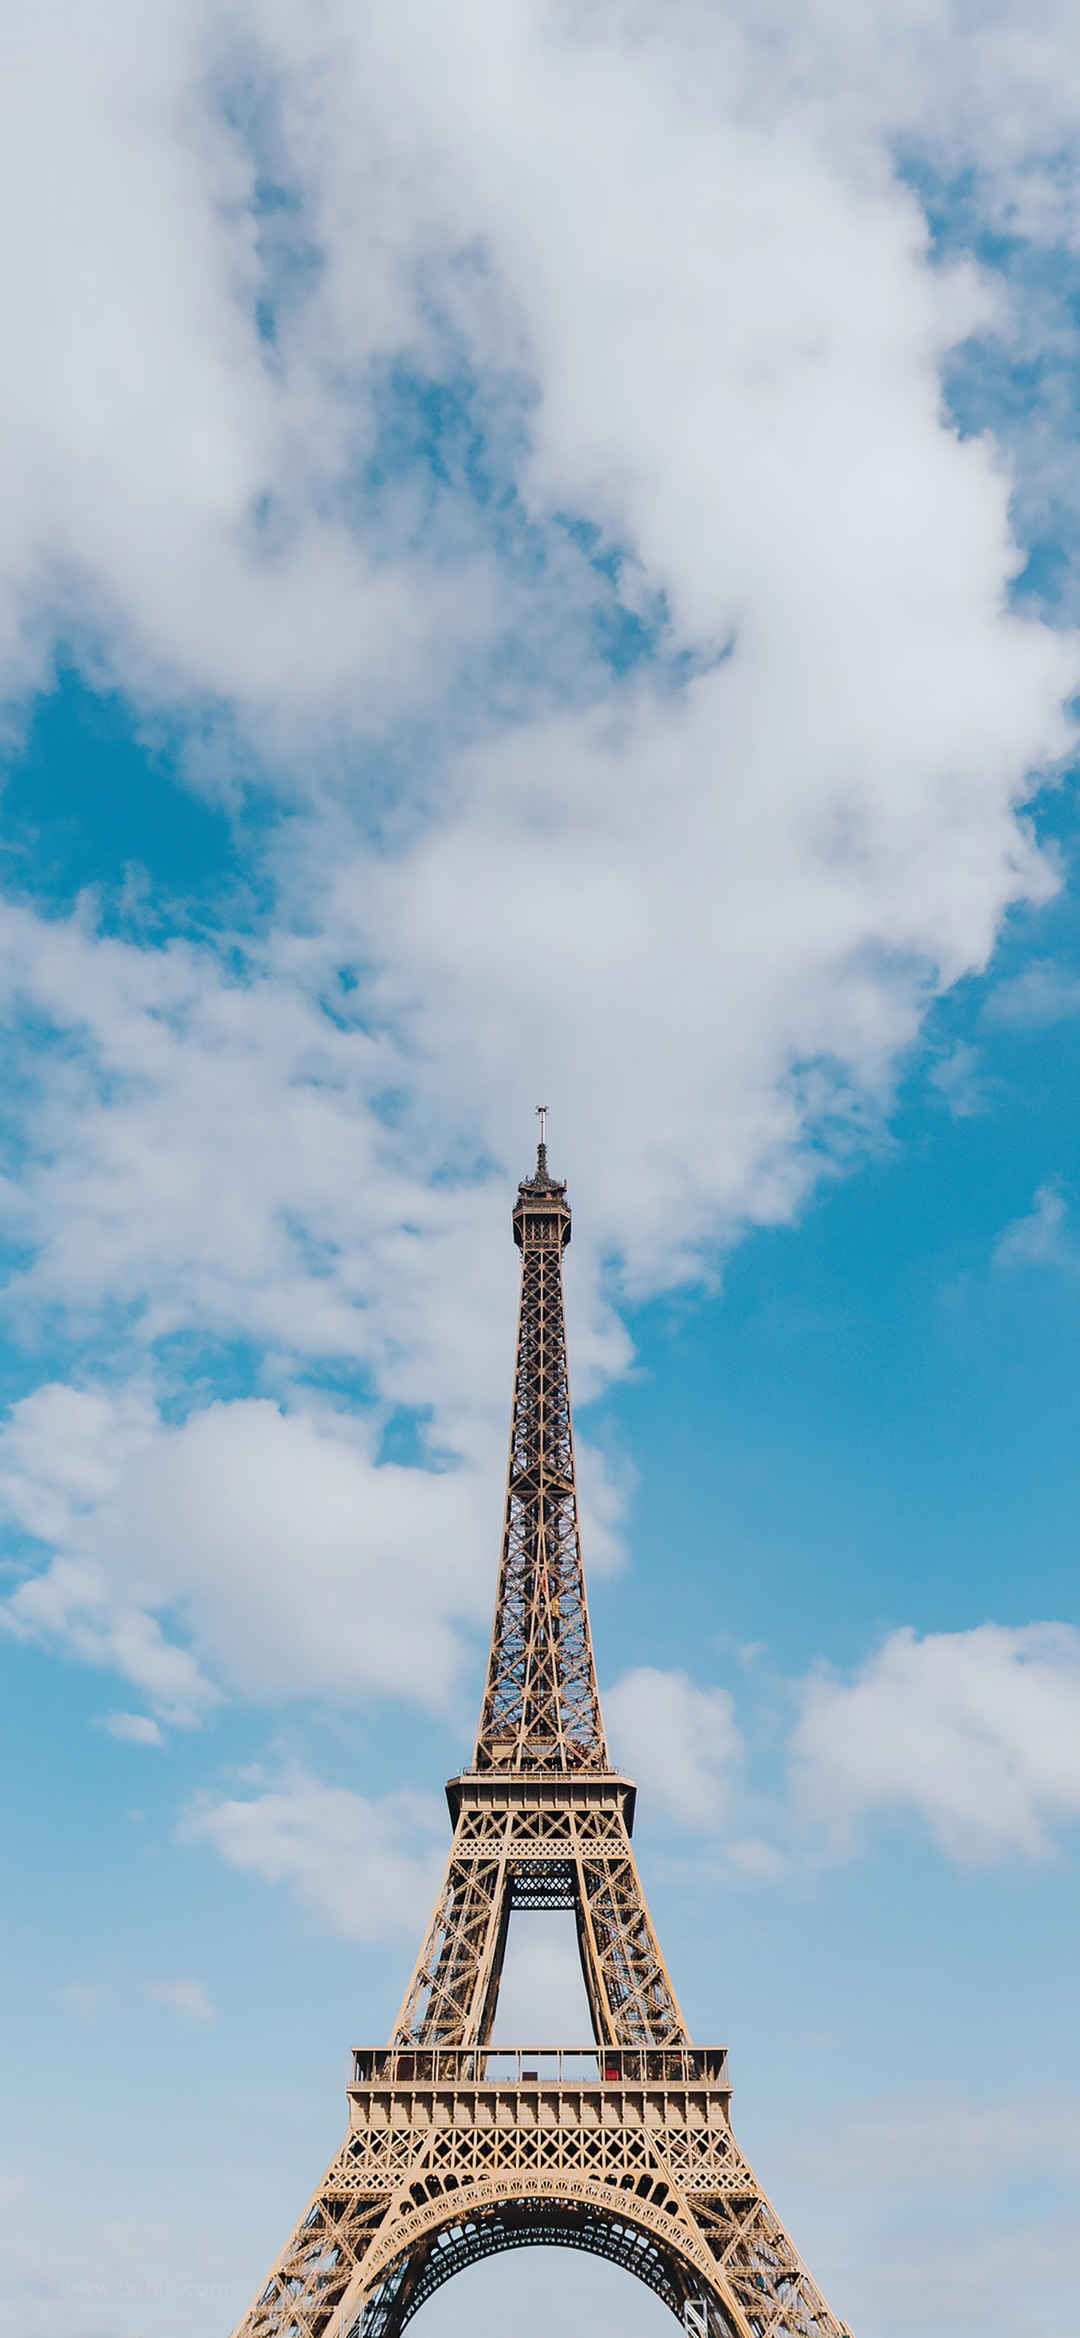 超高清巴黎铁塔风景手机壁纸-